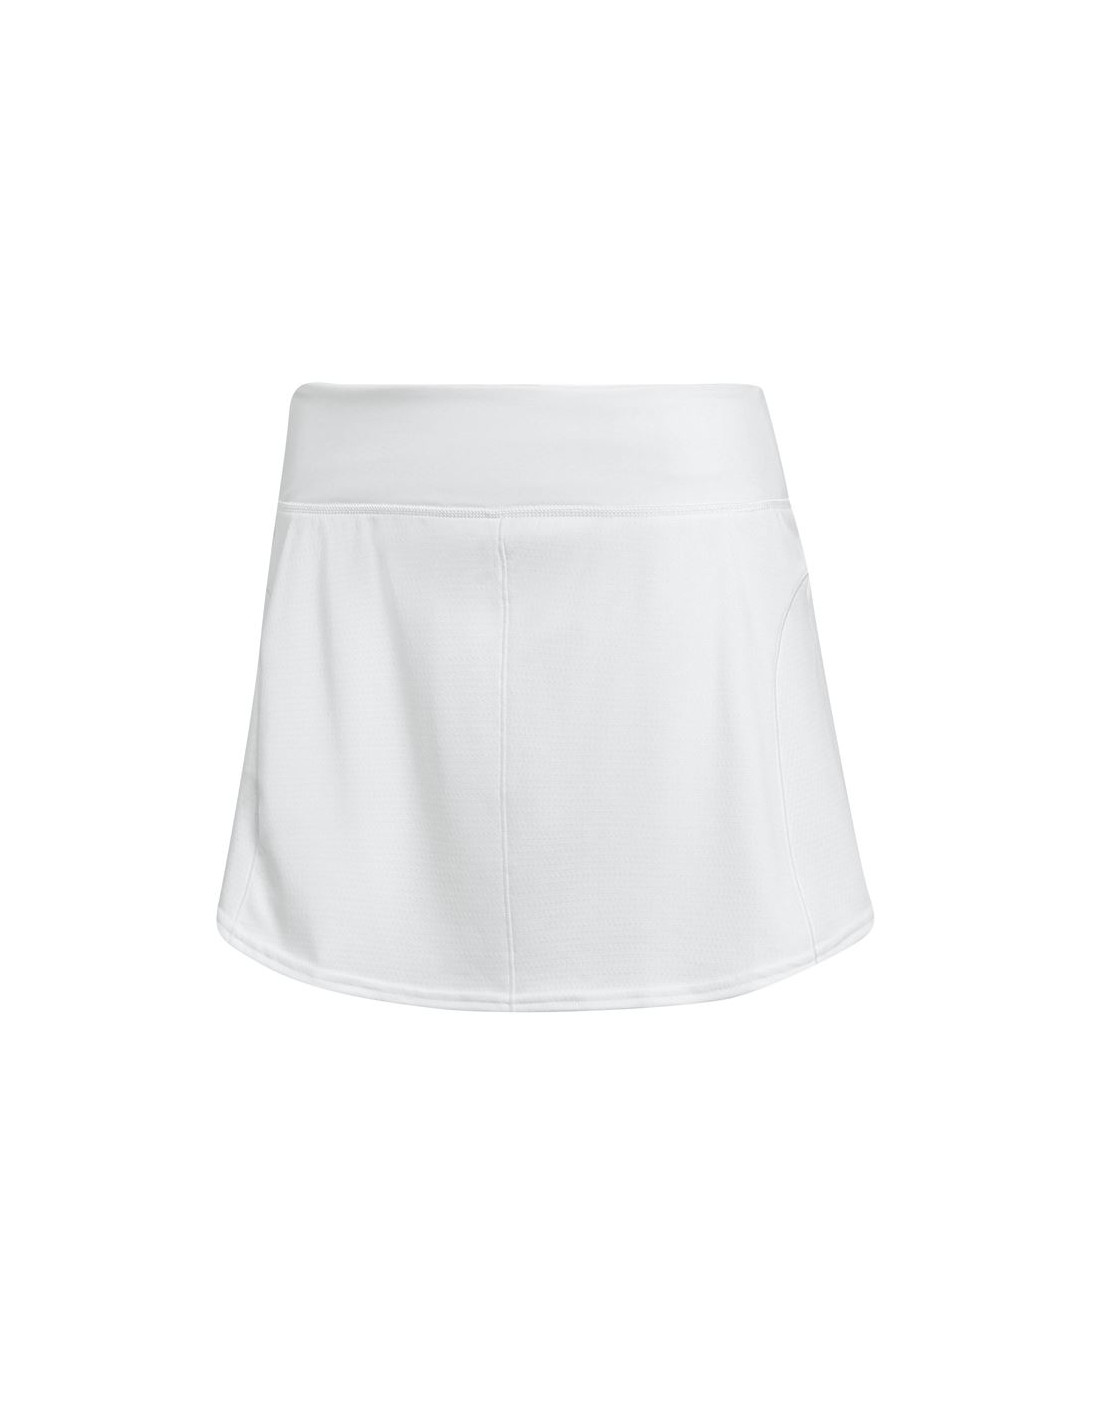 Falda de tenis adidas match w white